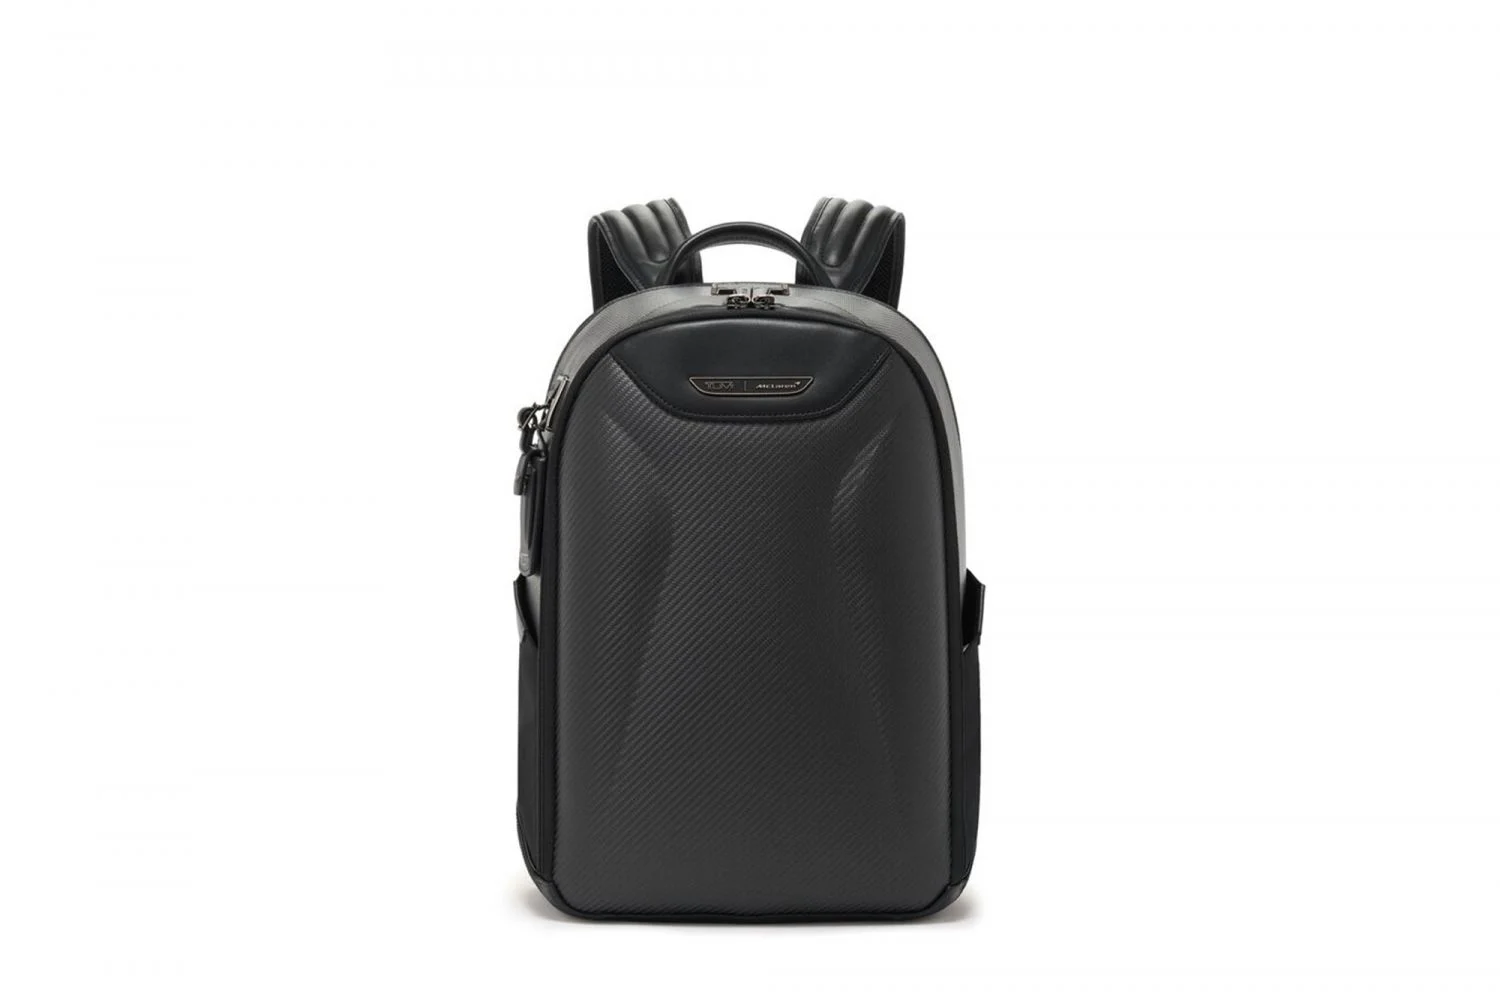 McLaren Velocity Backpack in Carbon